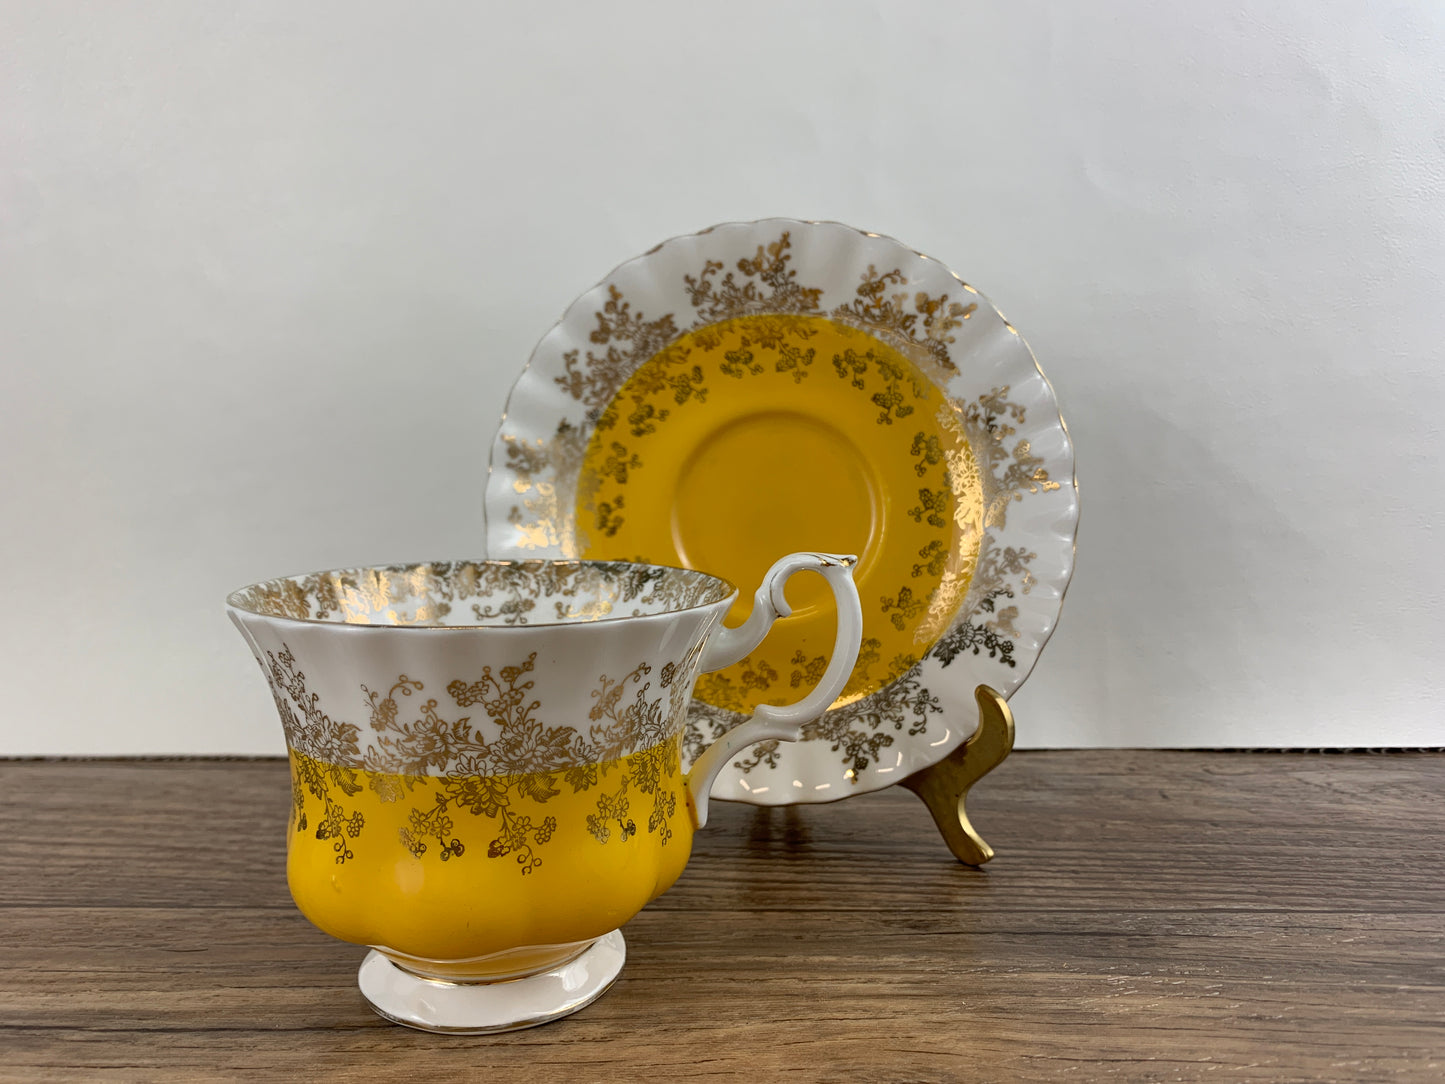 Vintage Royal Albert Regal Series Yellow teacup